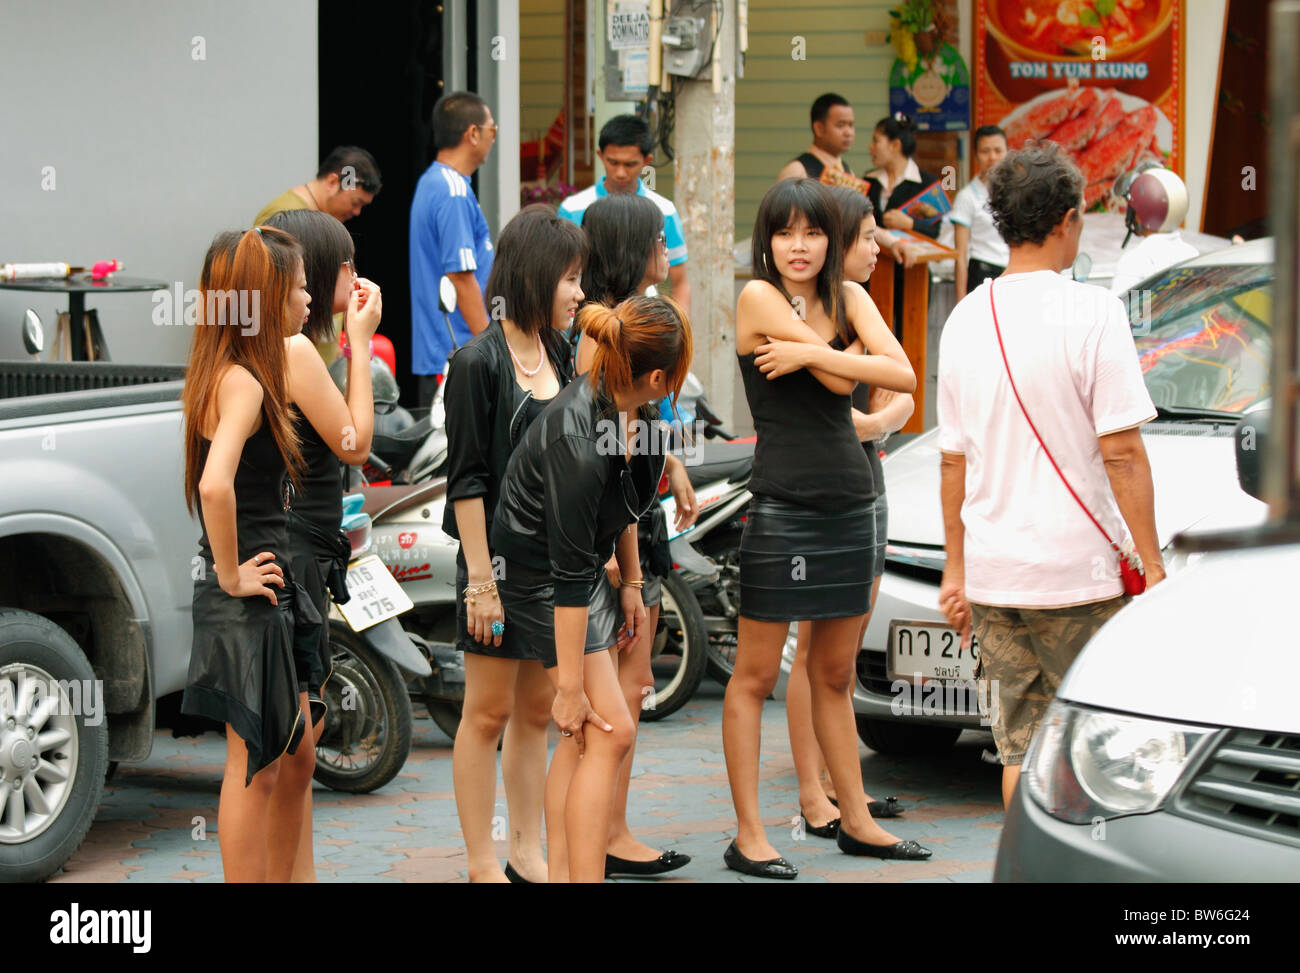 Couleur Noir habillé de jeunes filles thaïlandaises à appeler les clients, à l'avant d'un bar - night club, Pattaya, Thaïlande, Octobre 2010 Banque D'Images